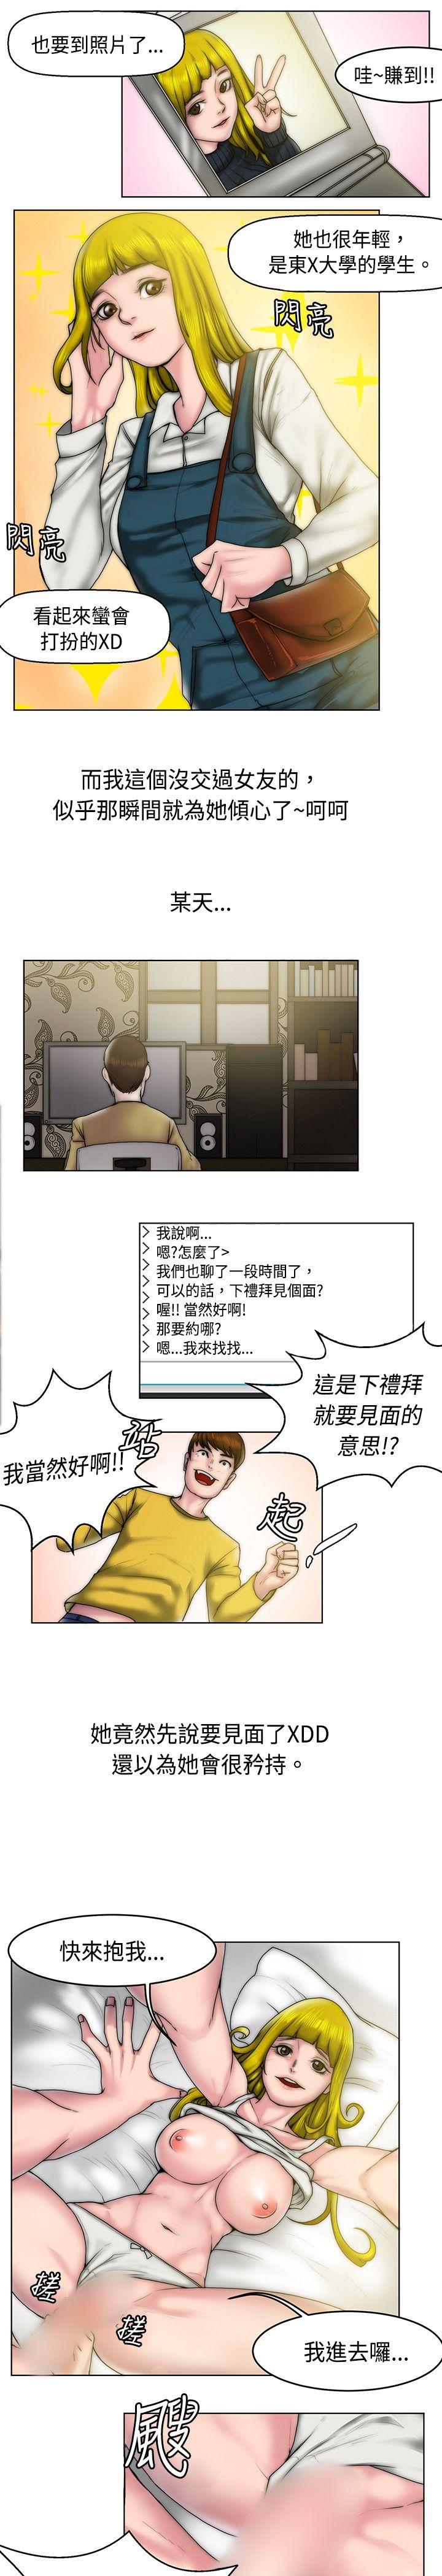 秘密Story  初恋被朋友抢(上) 漫画图片5.jpg